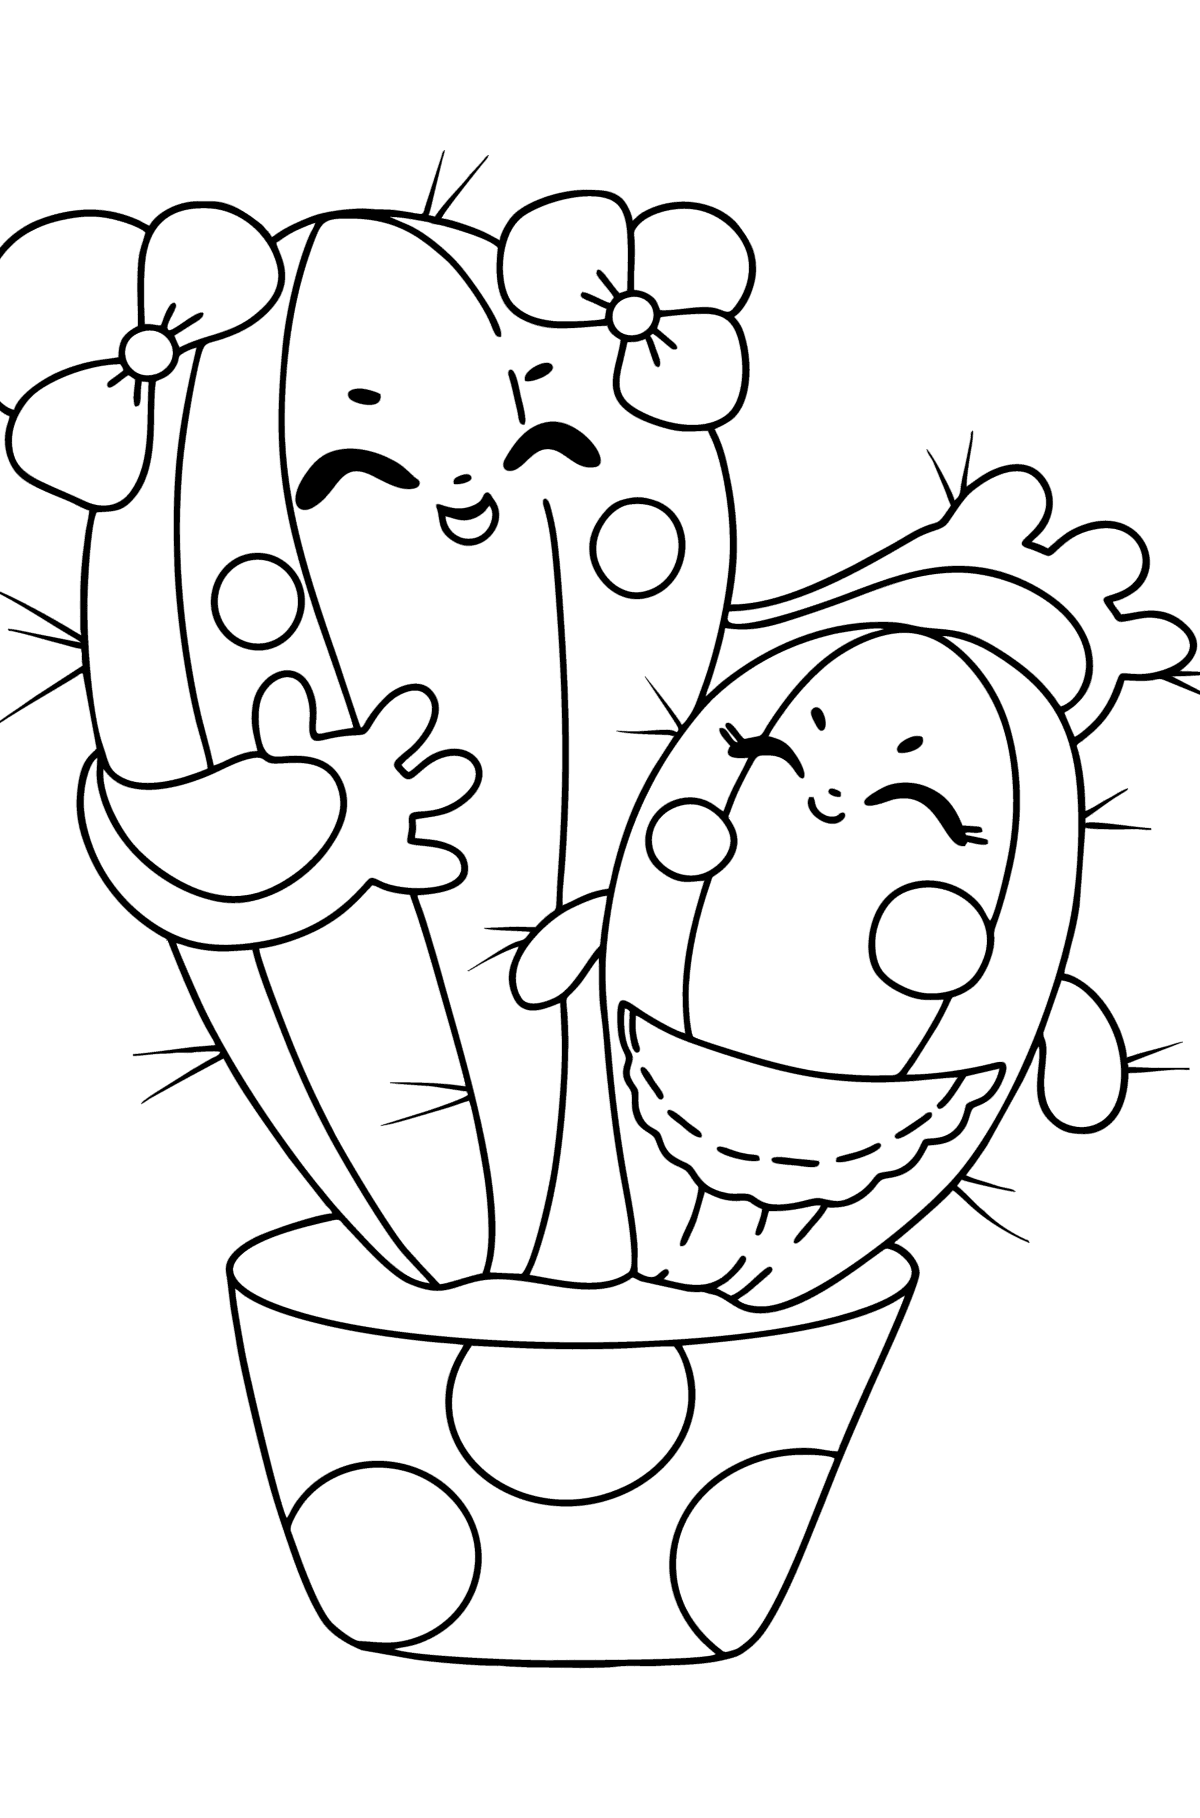 Coloriage - Cactus de dessin animé - Coloriages pour les Enfants